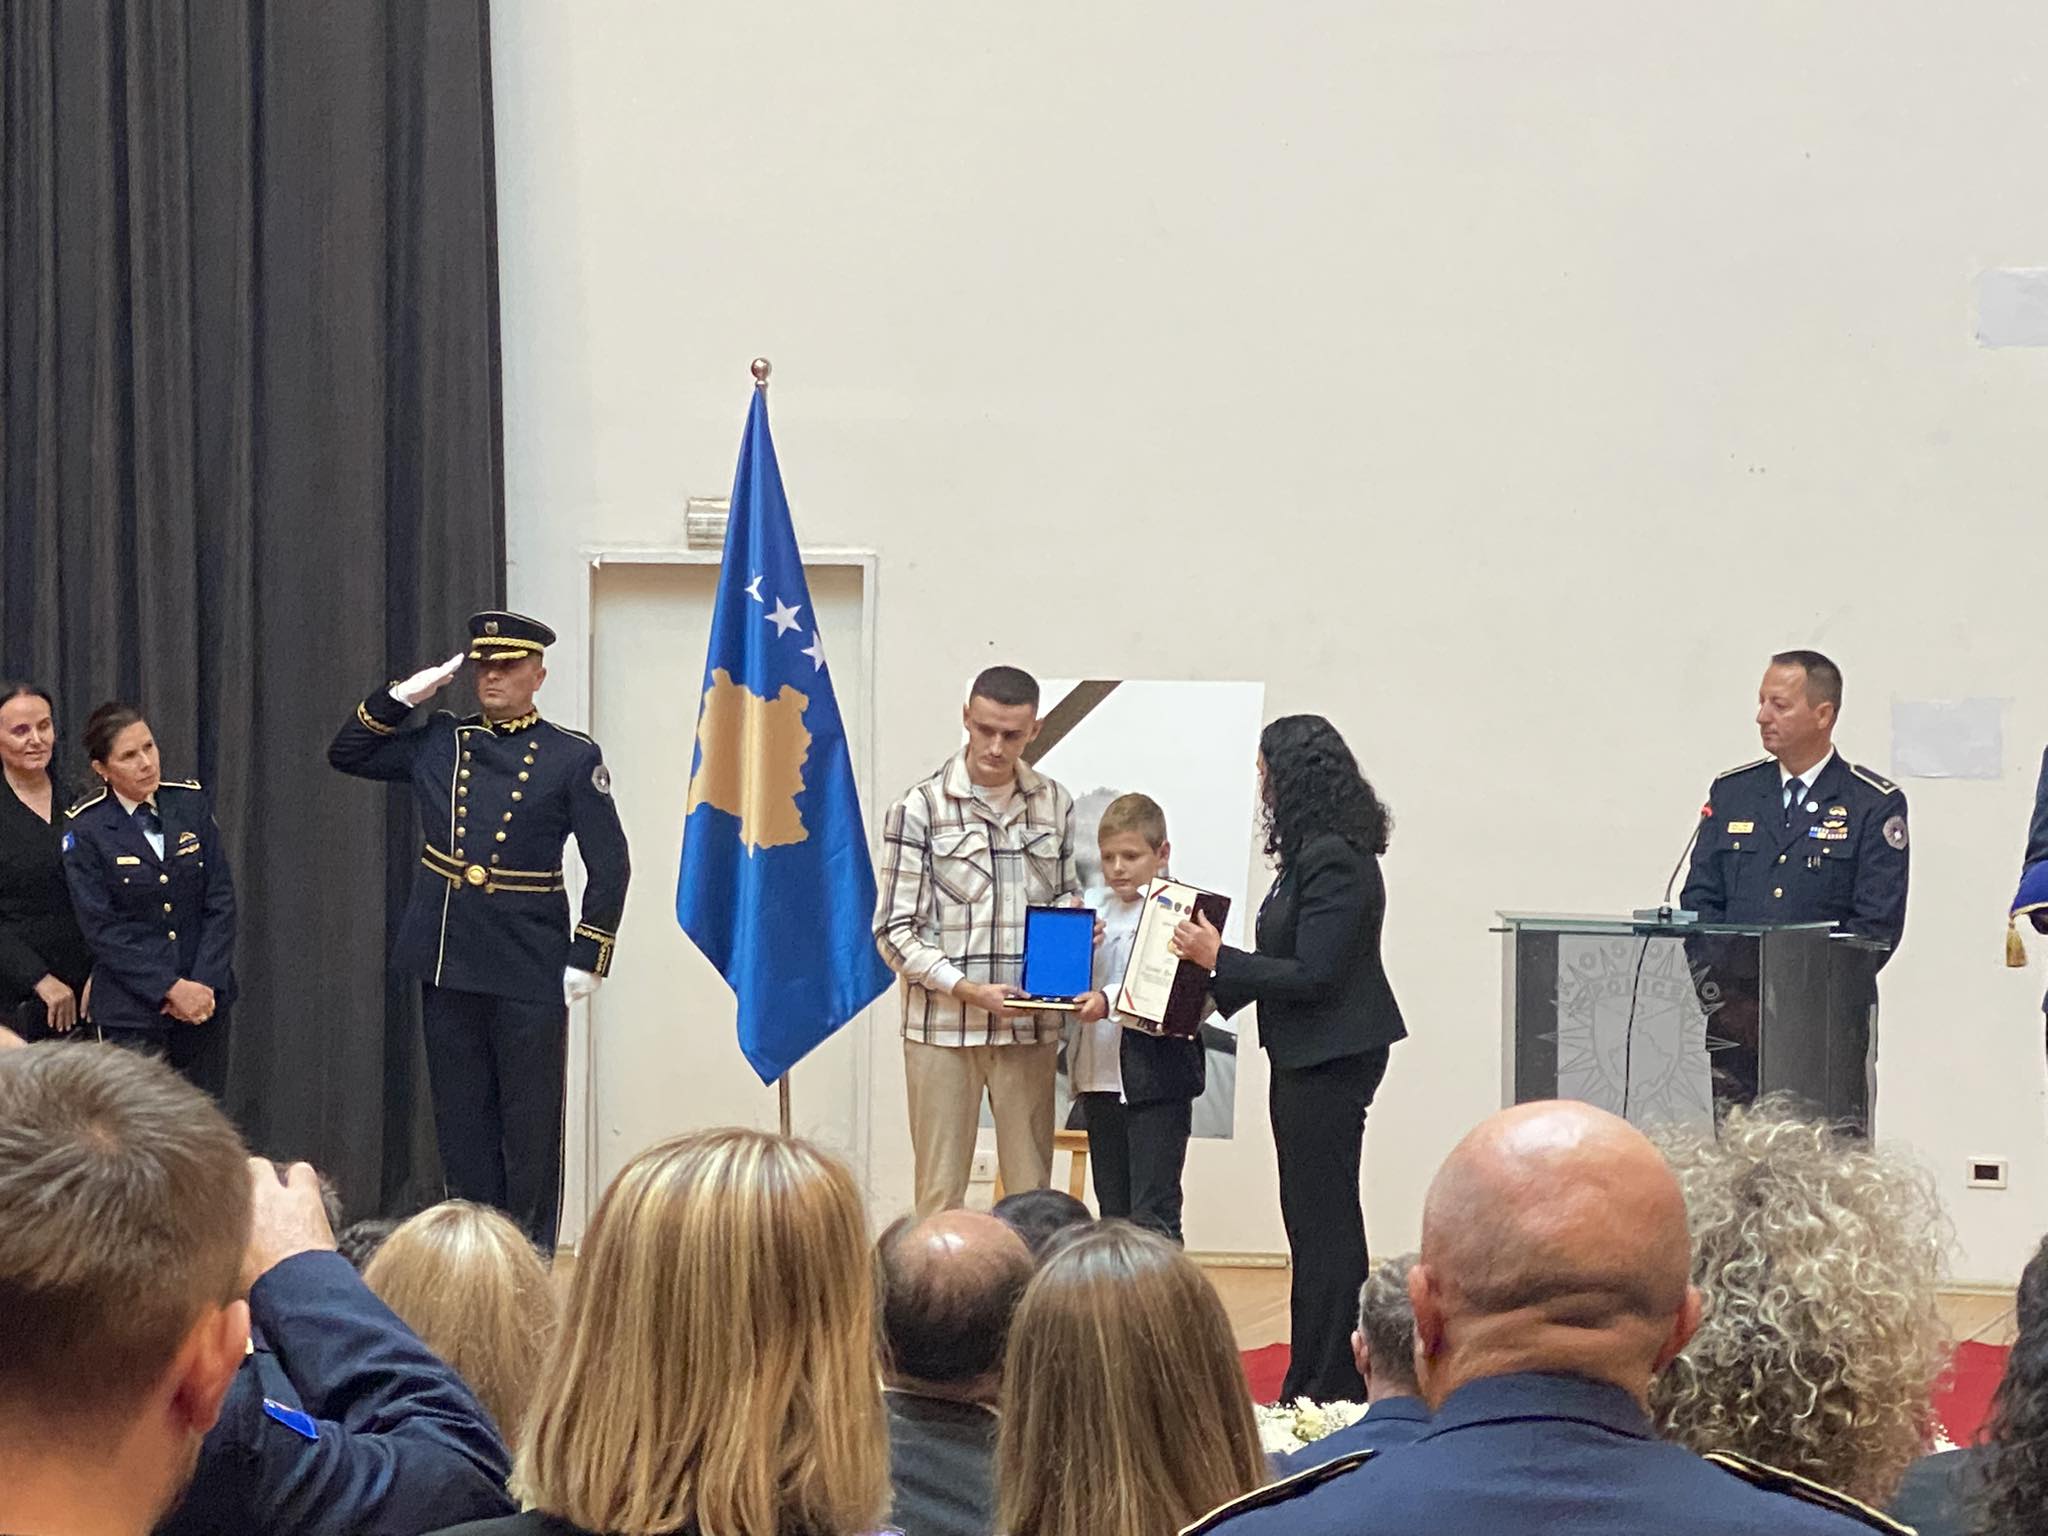 Rreshteri Afrim Bunjaku shpallet hero i Kosovës, nderimin e pranuan dy djemtë e tij nga Osmani